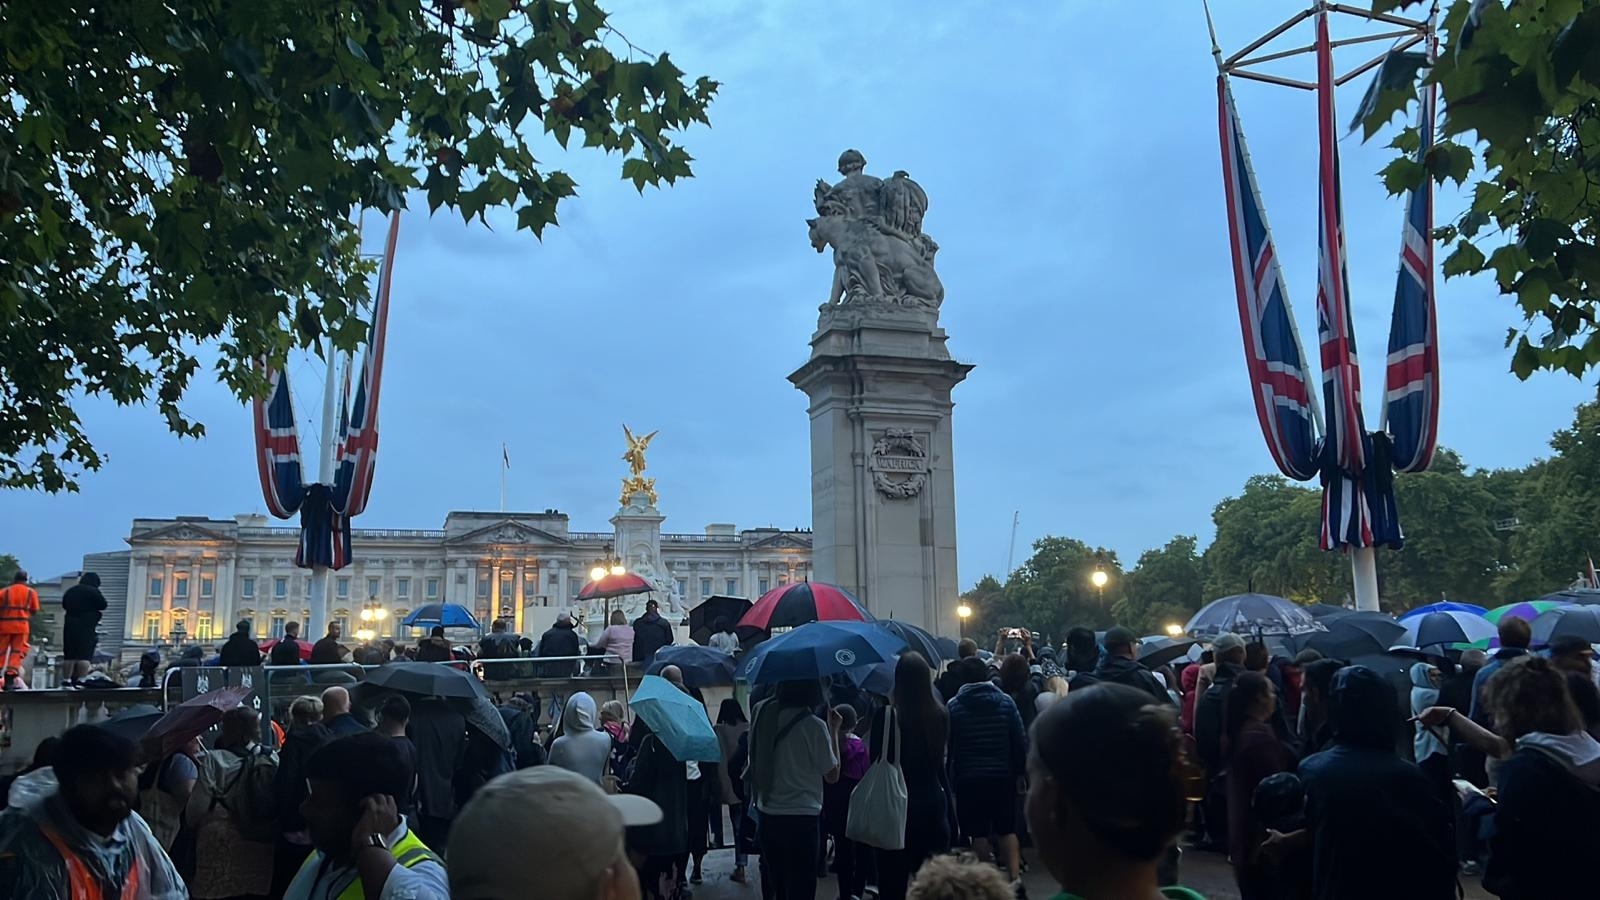 Mulțimea așteaptă sicriul Reginei la Palatul Buckingham